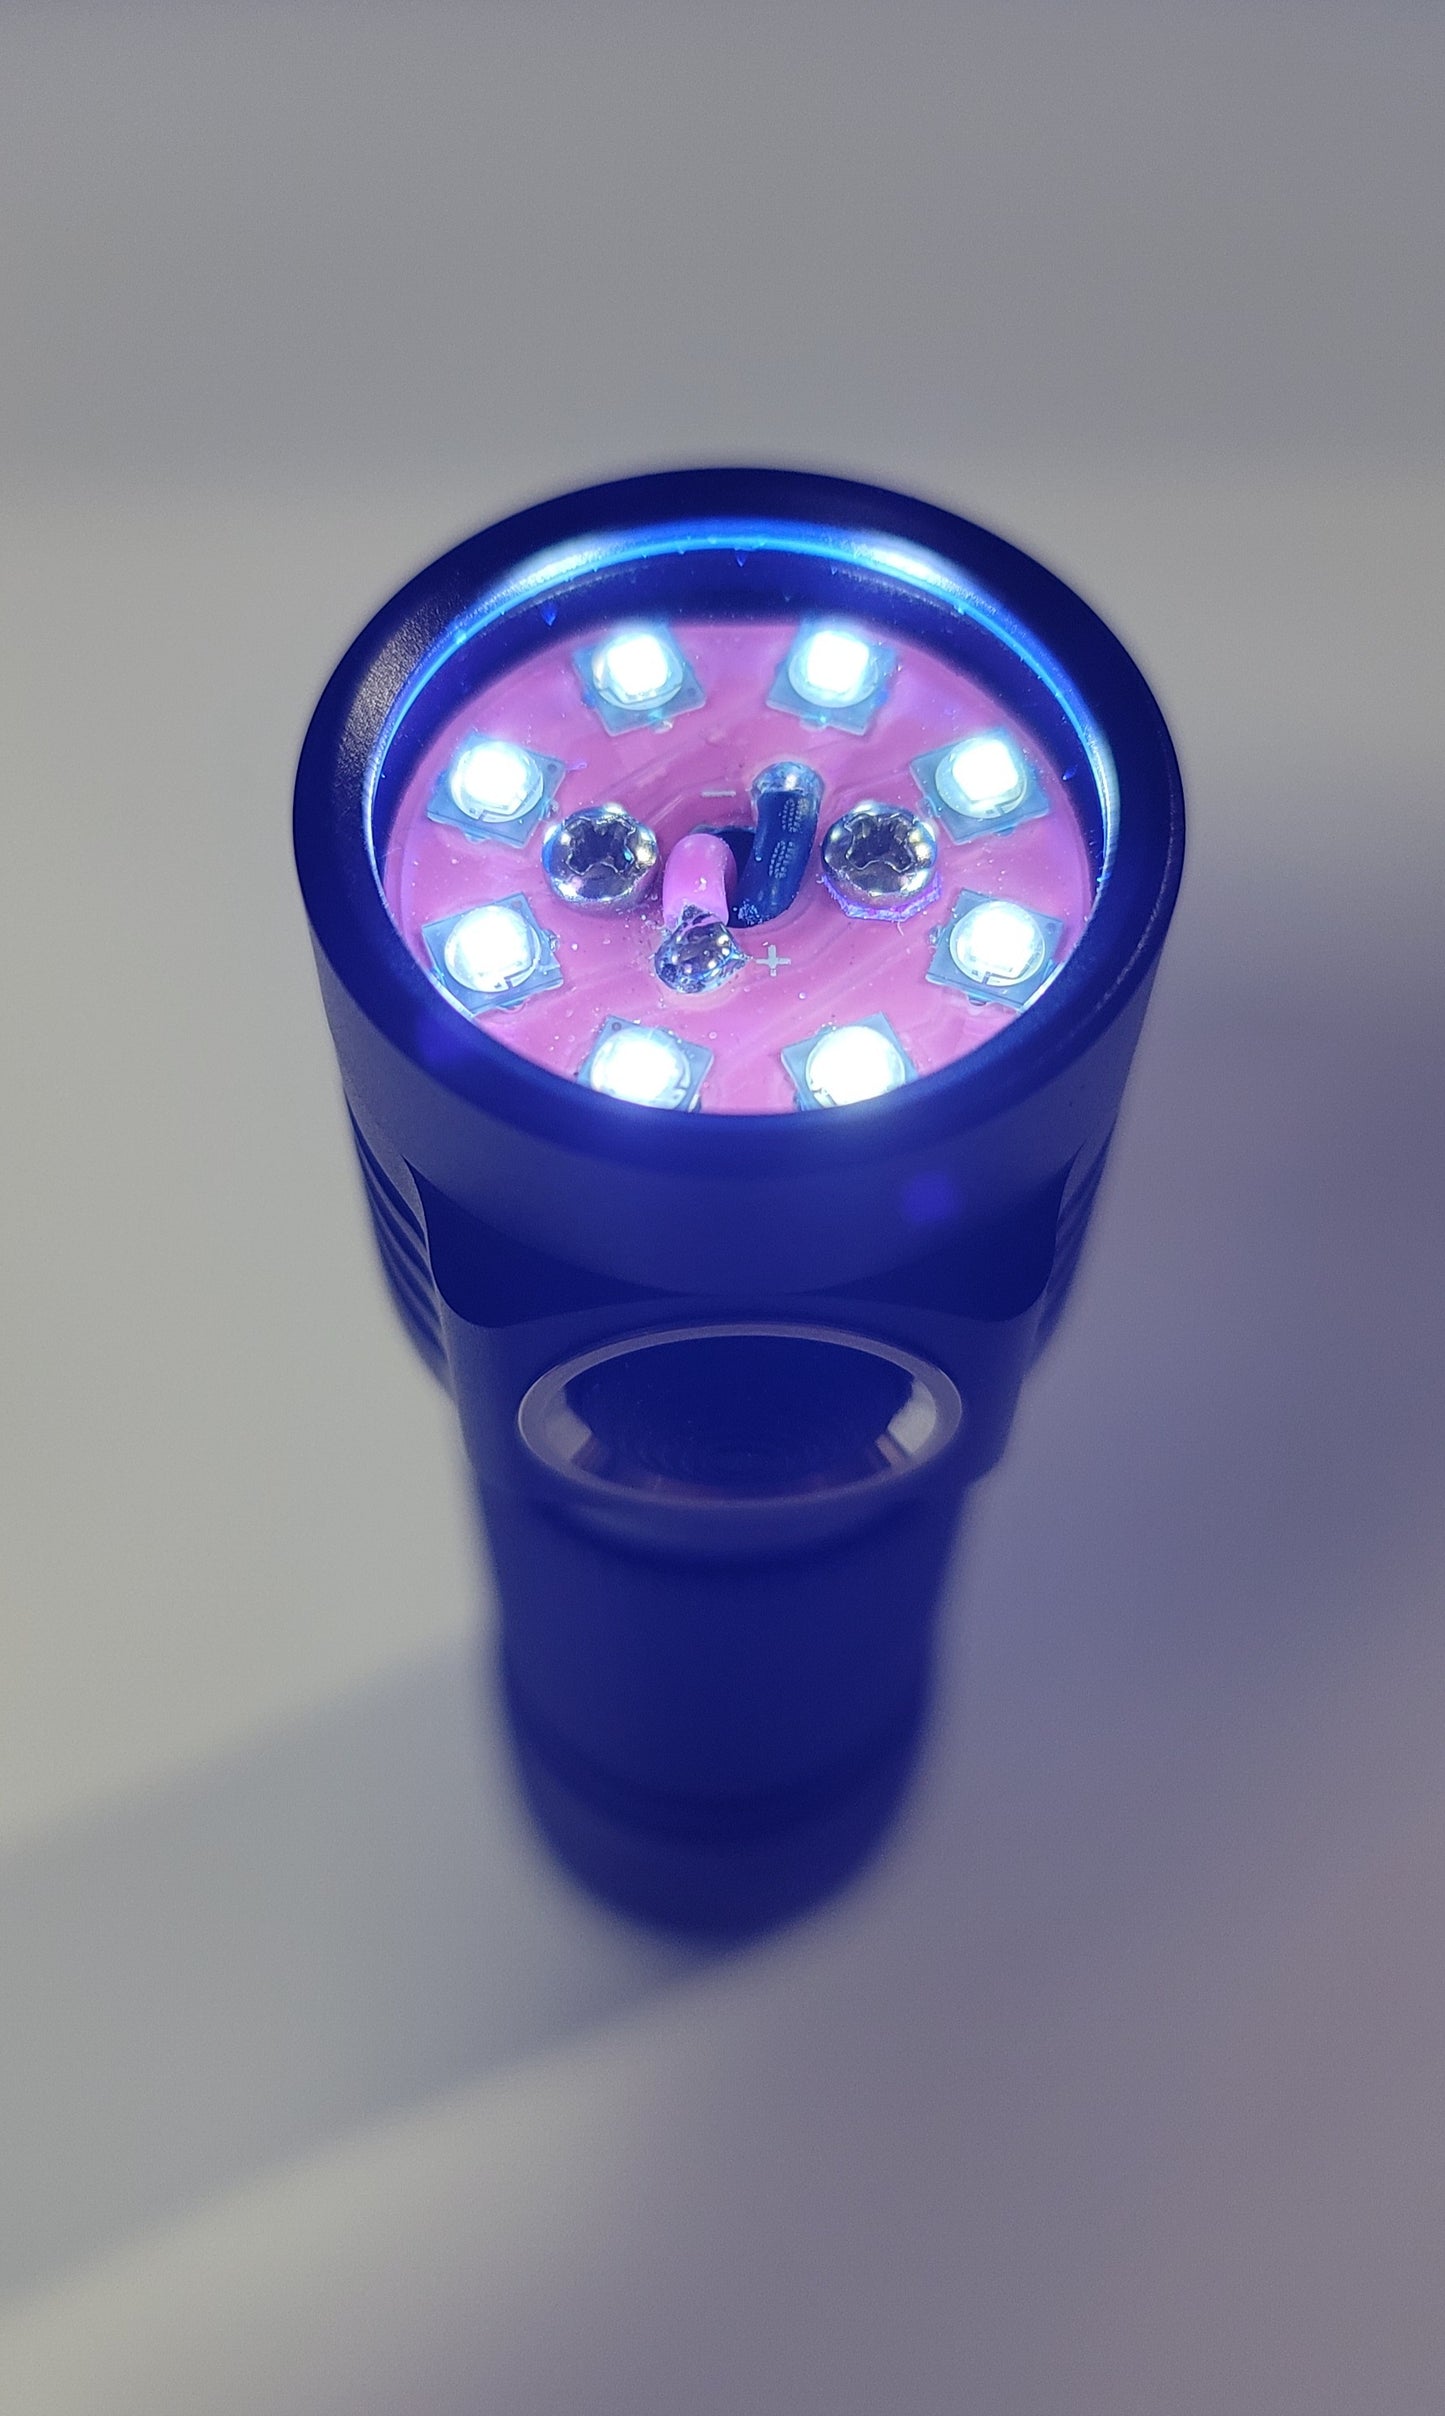 Emisar D4v2 High Power 8 X LED Mule UV LED Flashlight "CUSTOM BUILT-TO-ORDER"